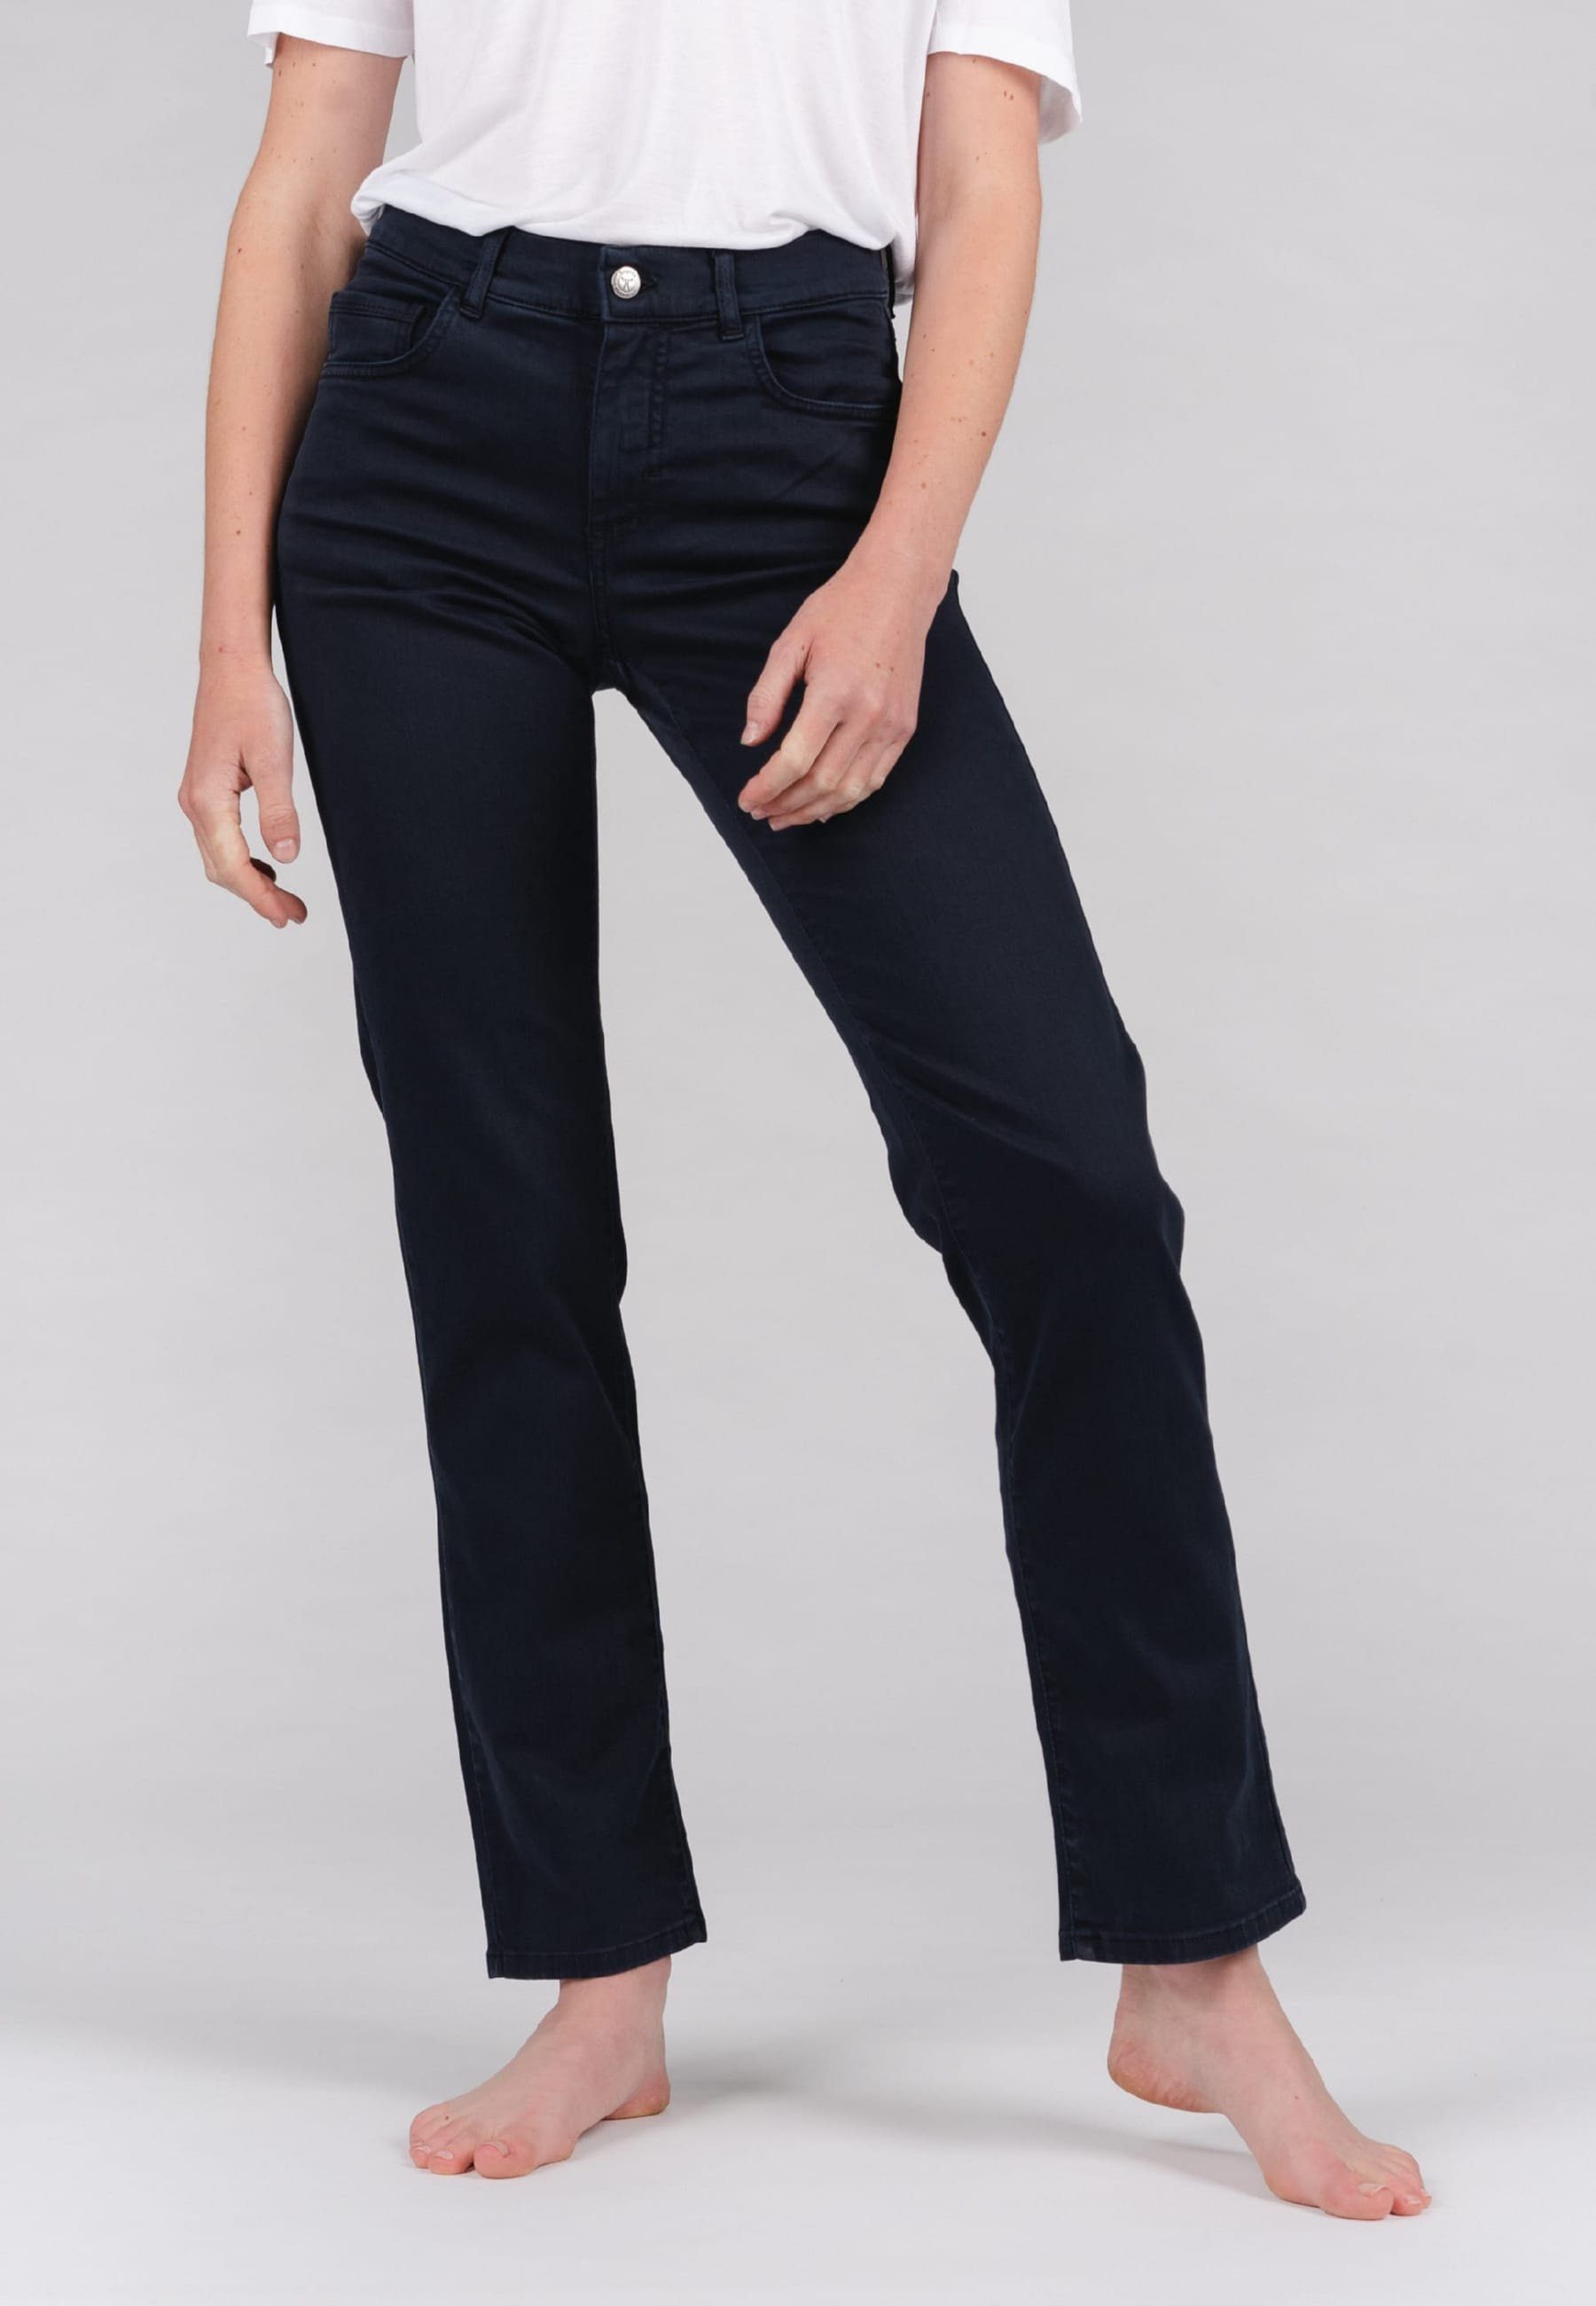 Fit Jeans unifarbenen Design, geradem Bein ANGELS mit Dolly Straight-Jeans mit Straight